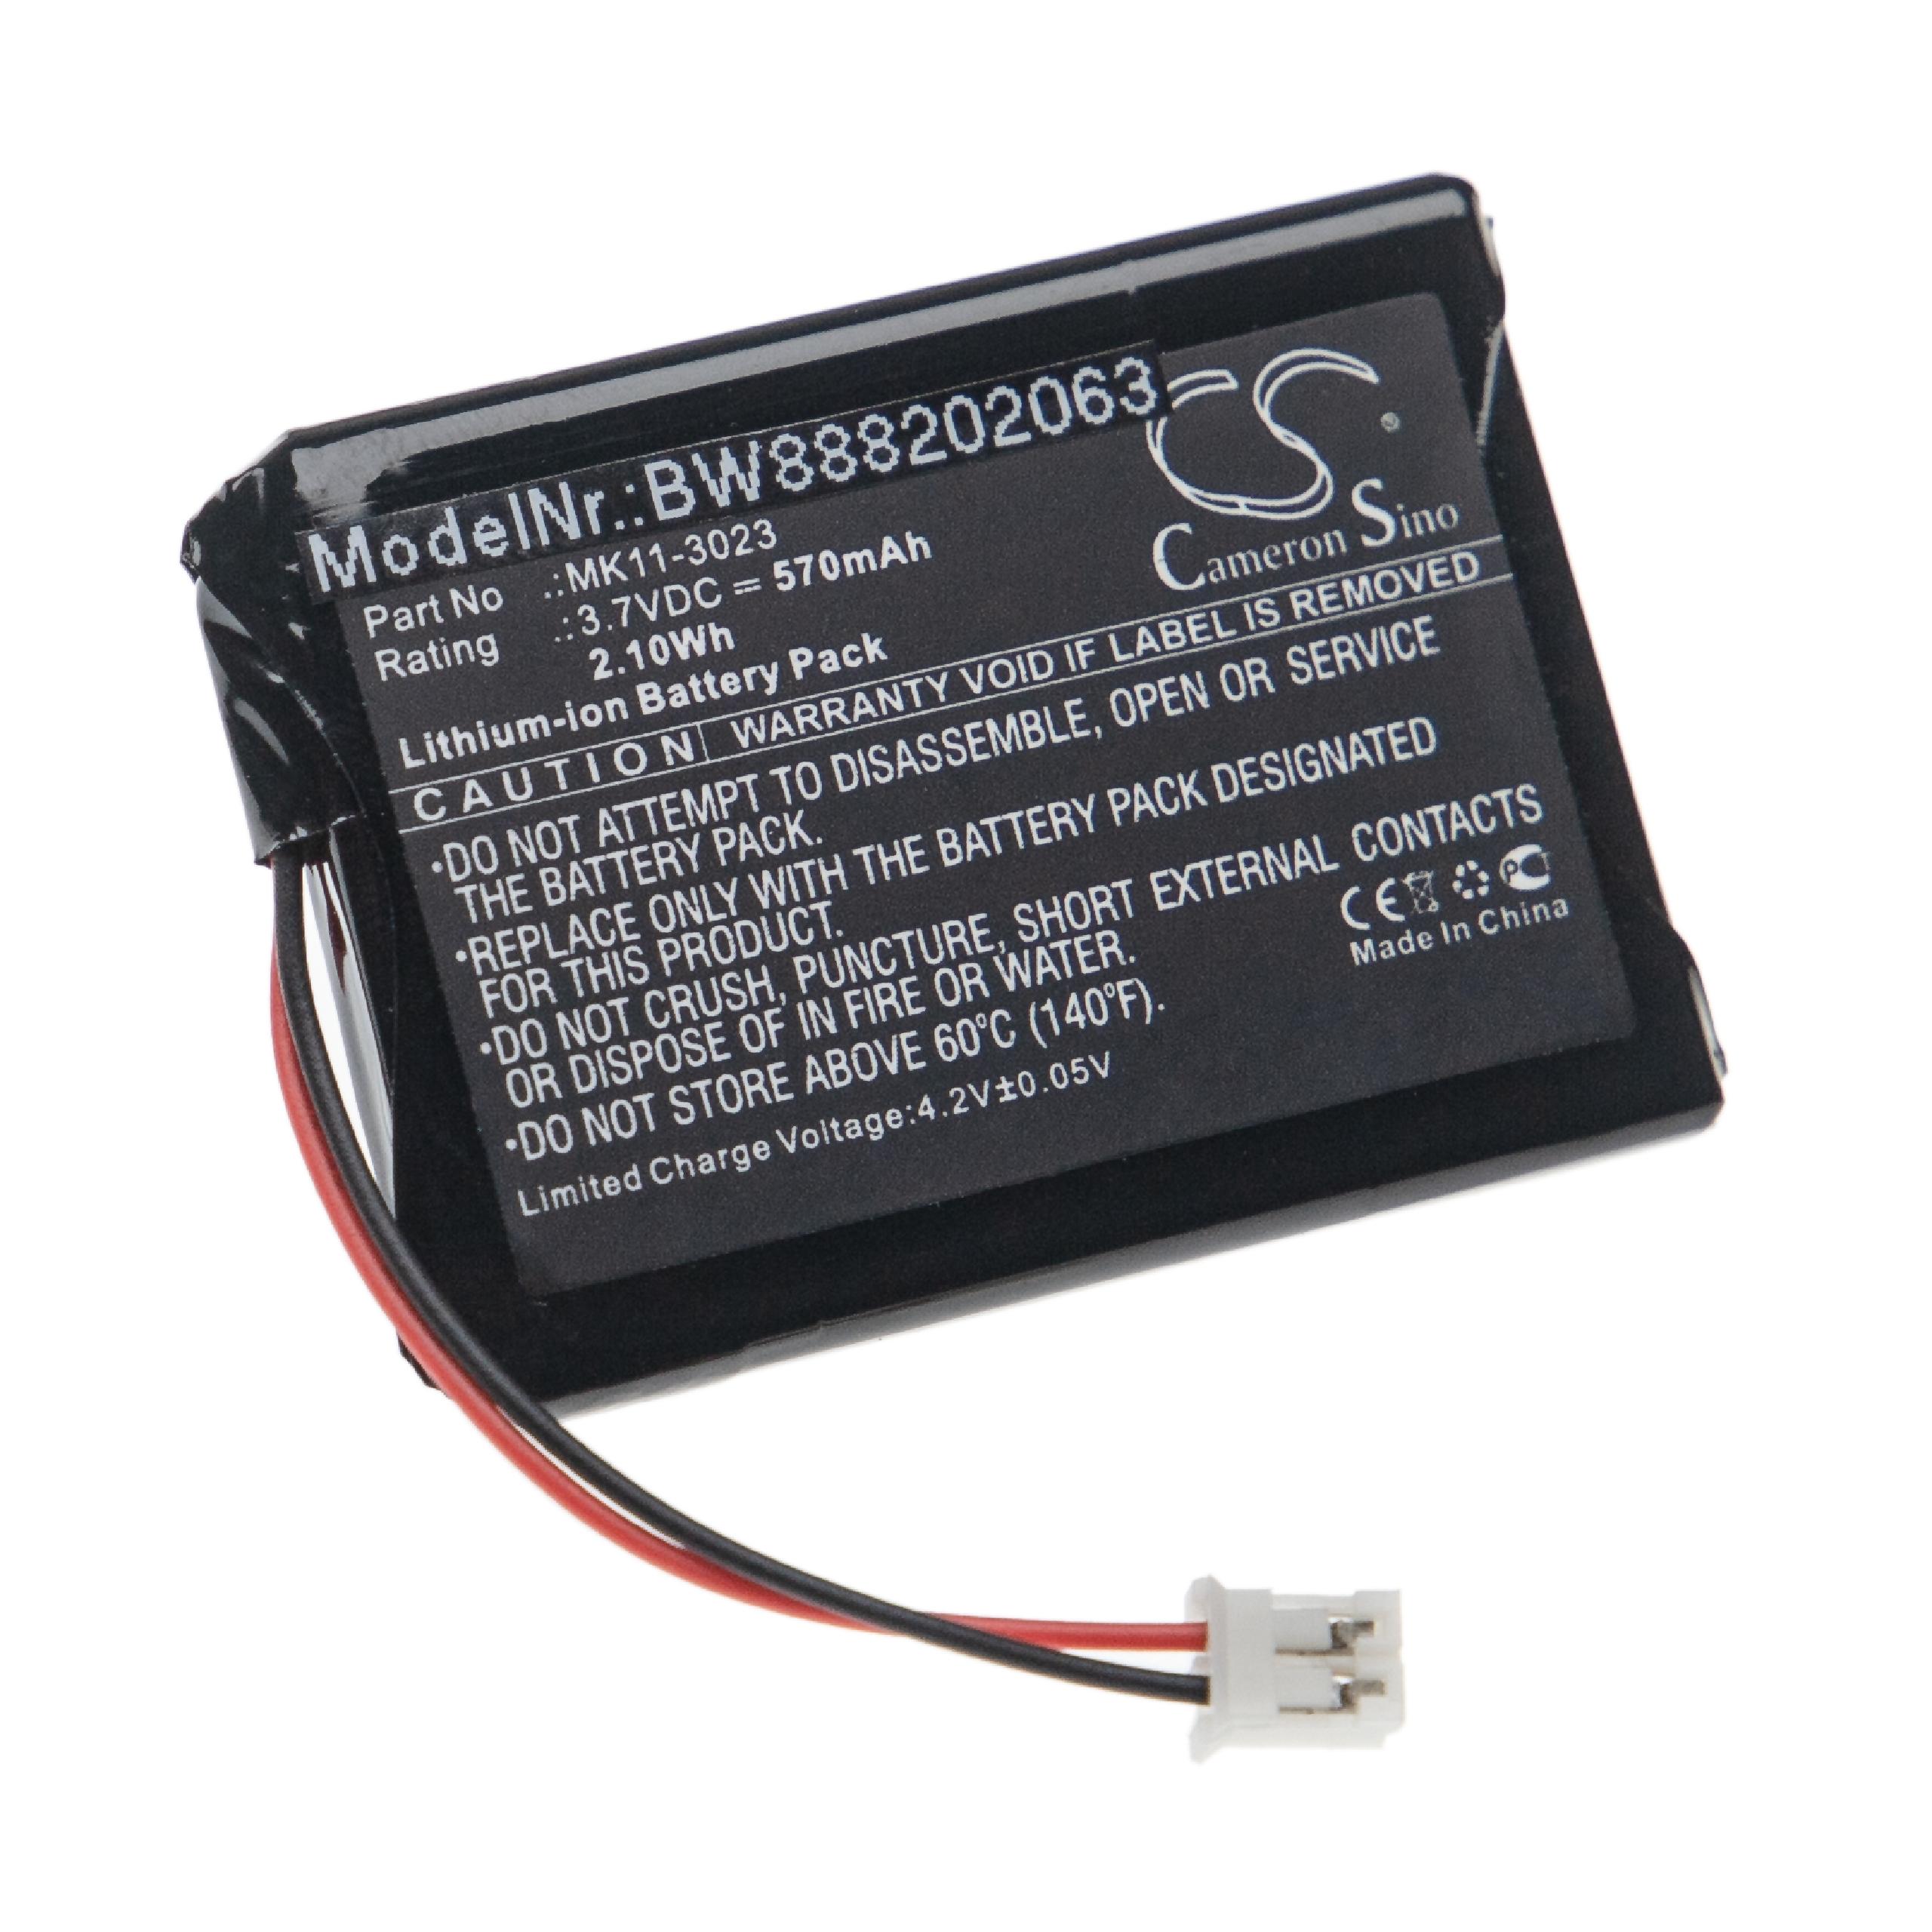 Batterie remplace Sony MK11-3023, MK11-2903, MK11-2902 pour clavier - 570mAh 3,7V Li-ion